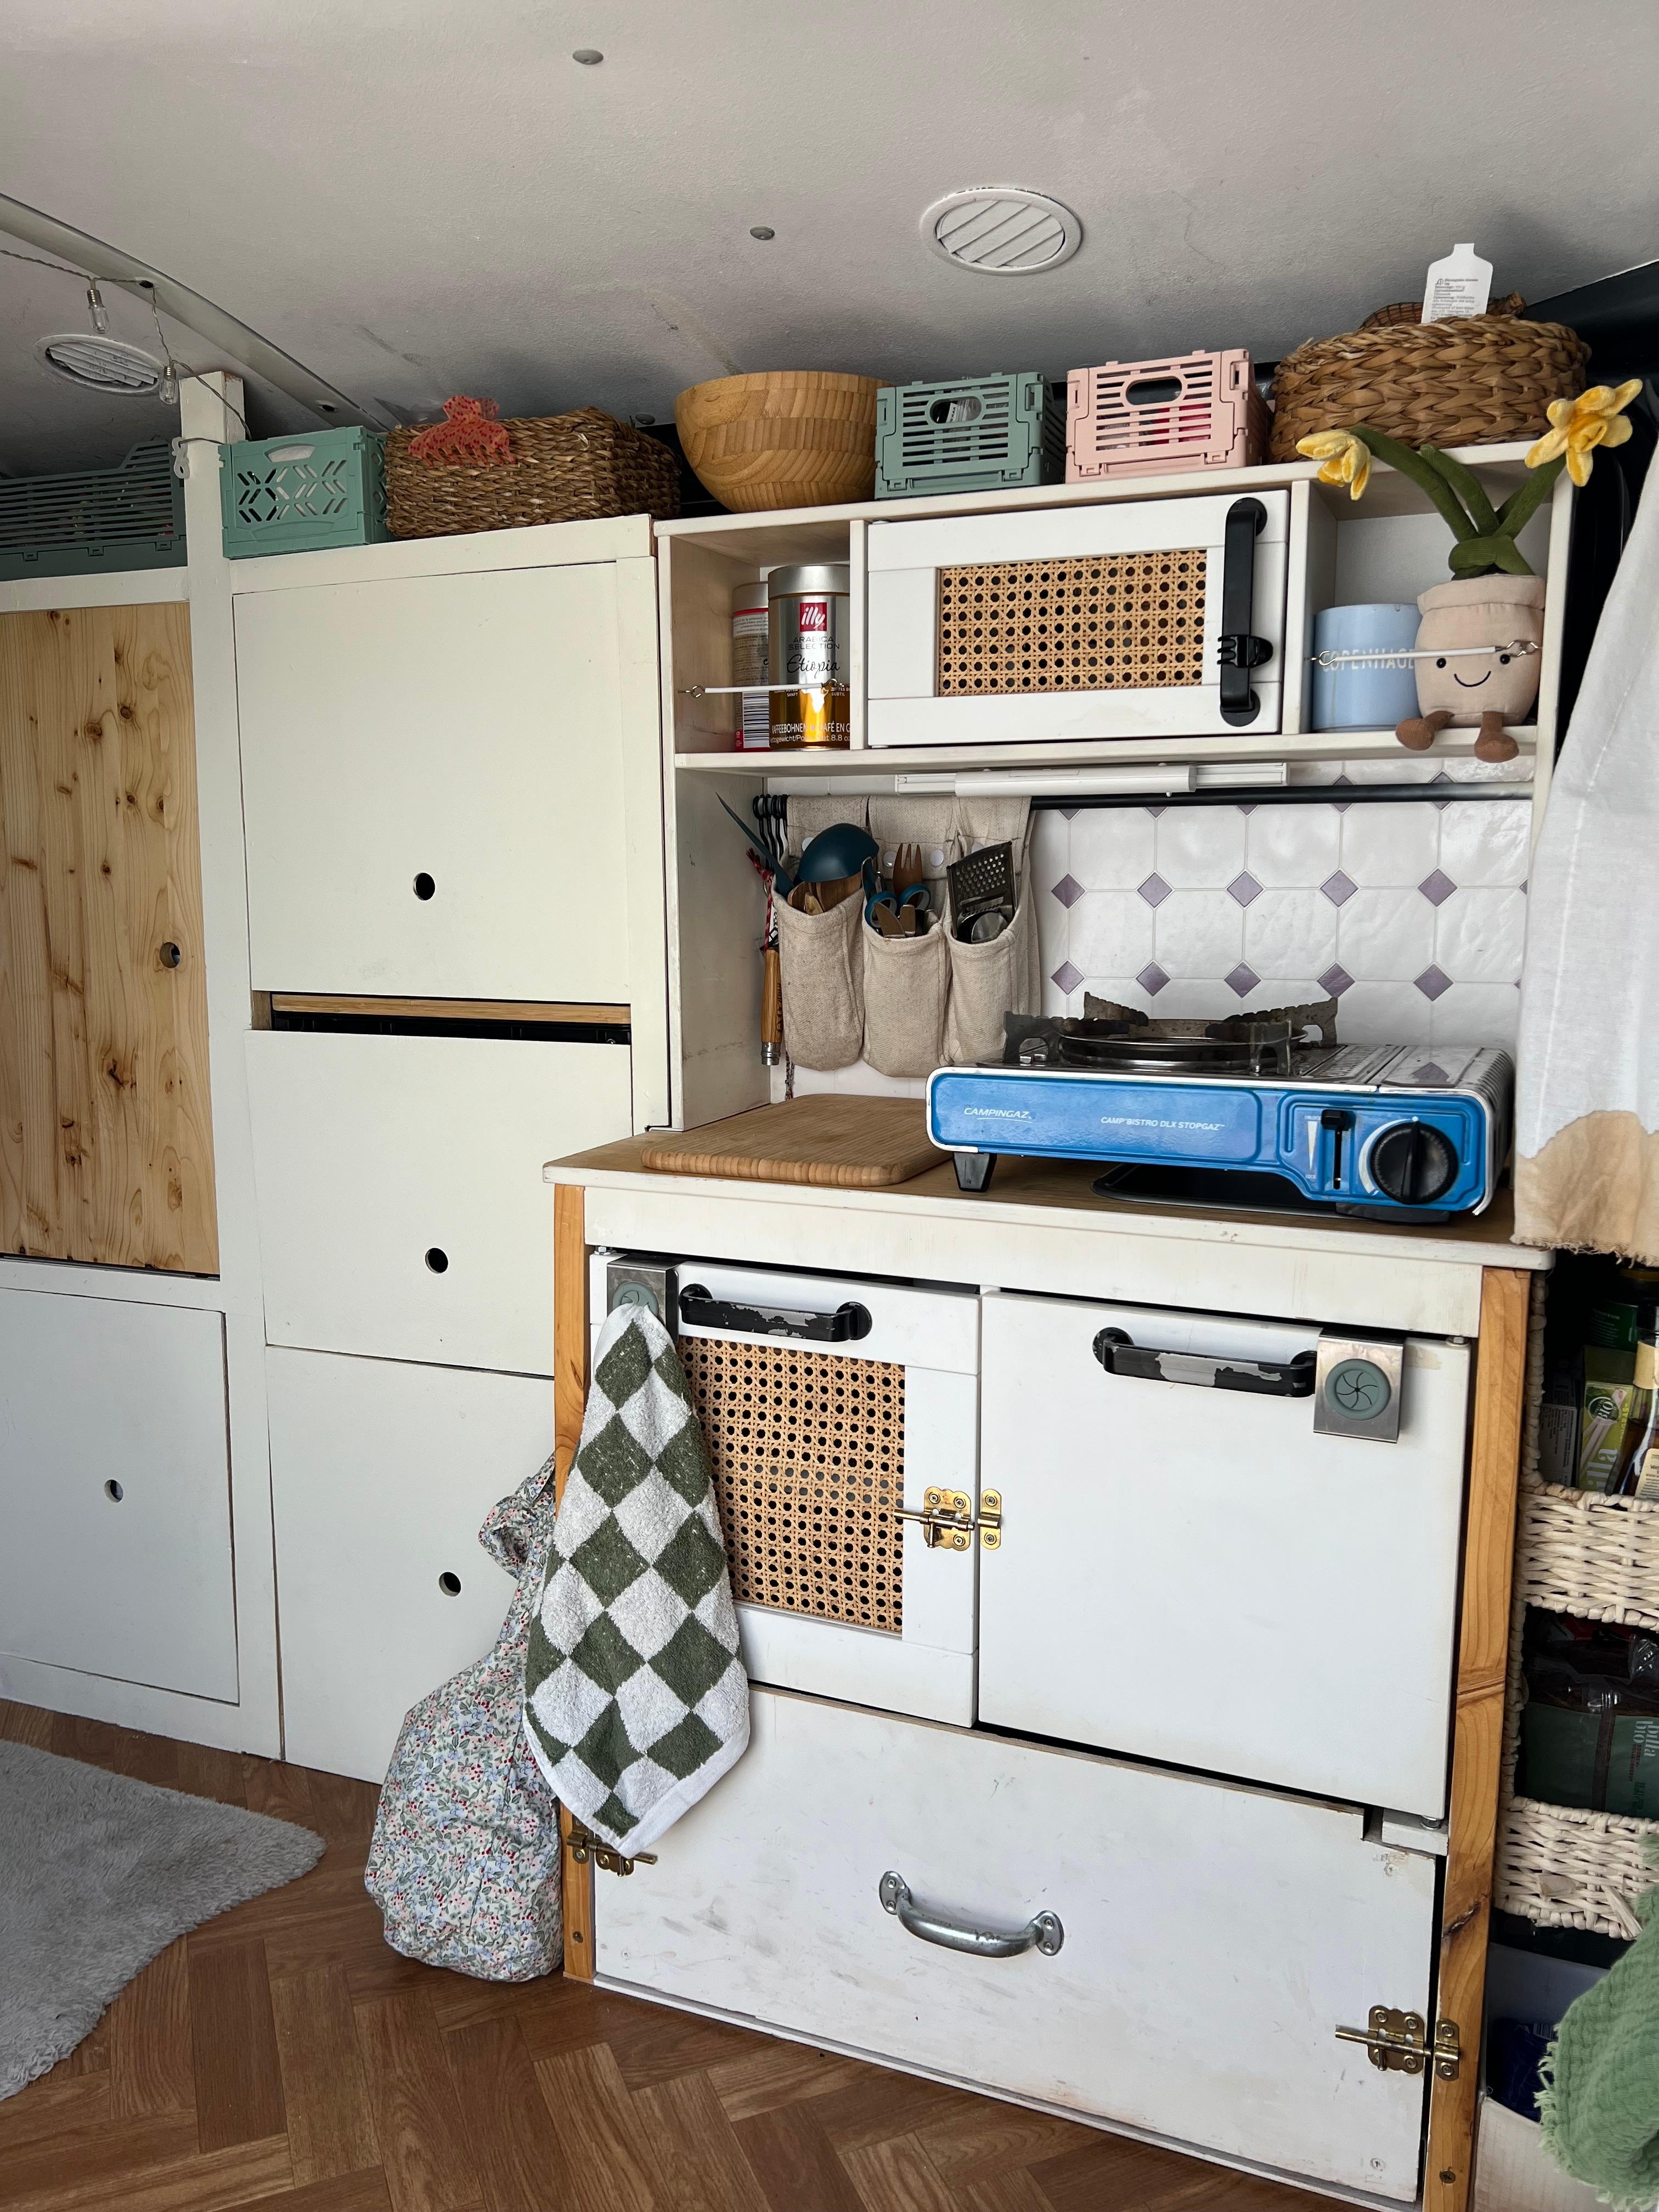 Die Duktig Kinderküche vom Schweden muss nicht immer unbedingt eine Kinderküche bleiben. 
#ikeahack #vanlife #ikea #hack #diy #tinyhome #scandihome